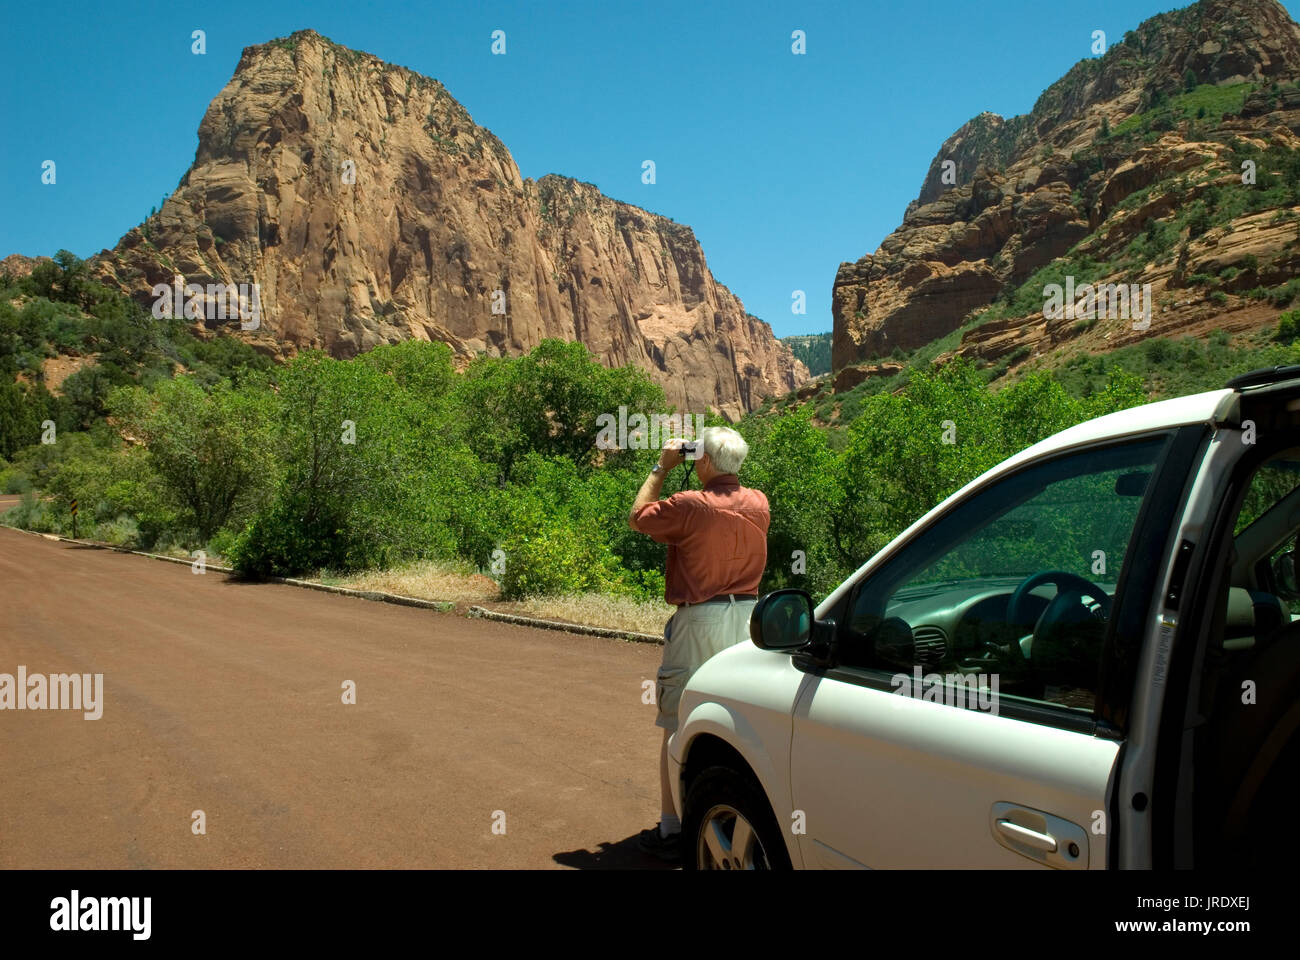 Homme de race blanche (60 à 70 ans) prenant des photos avec un téléphone cellulaire aux canyons de Kolob au parc national de Zion. Springdale, Utah, États-Unis. Banque D'Images